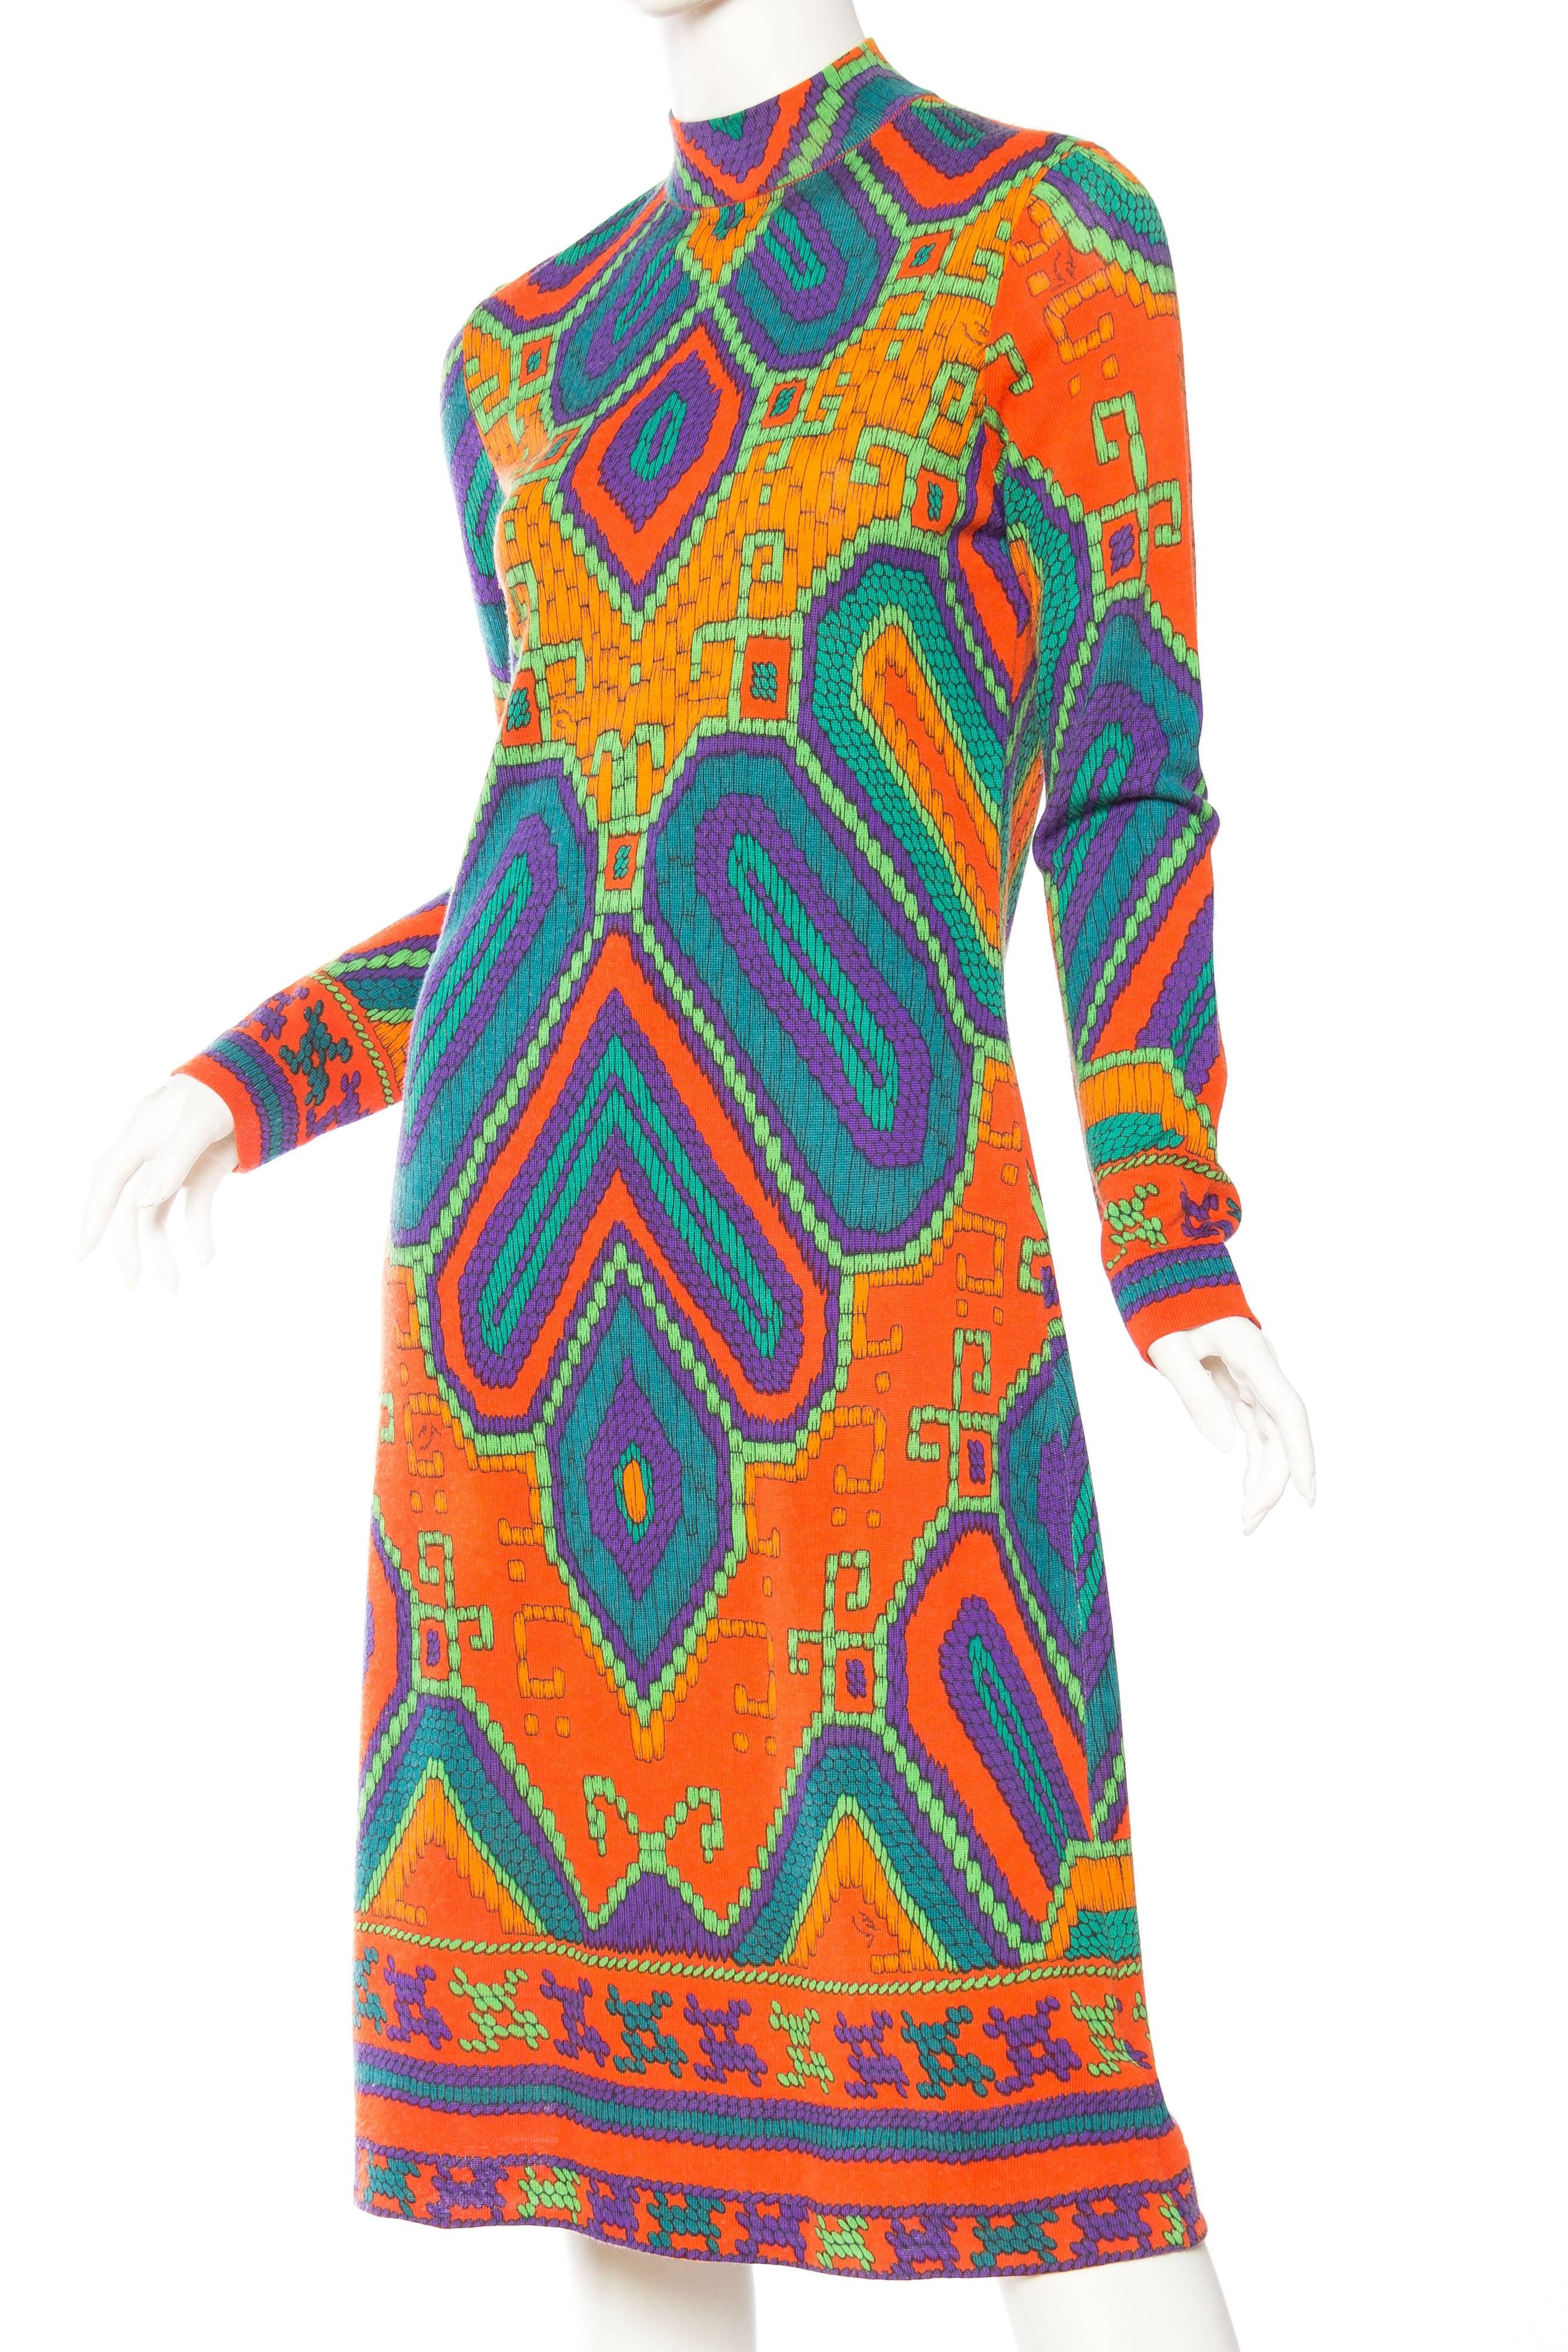 Women's 1960S LEONARD Orange & Blue Wool Blend Knit Long Sleeve Moroccan Print Mod Dress